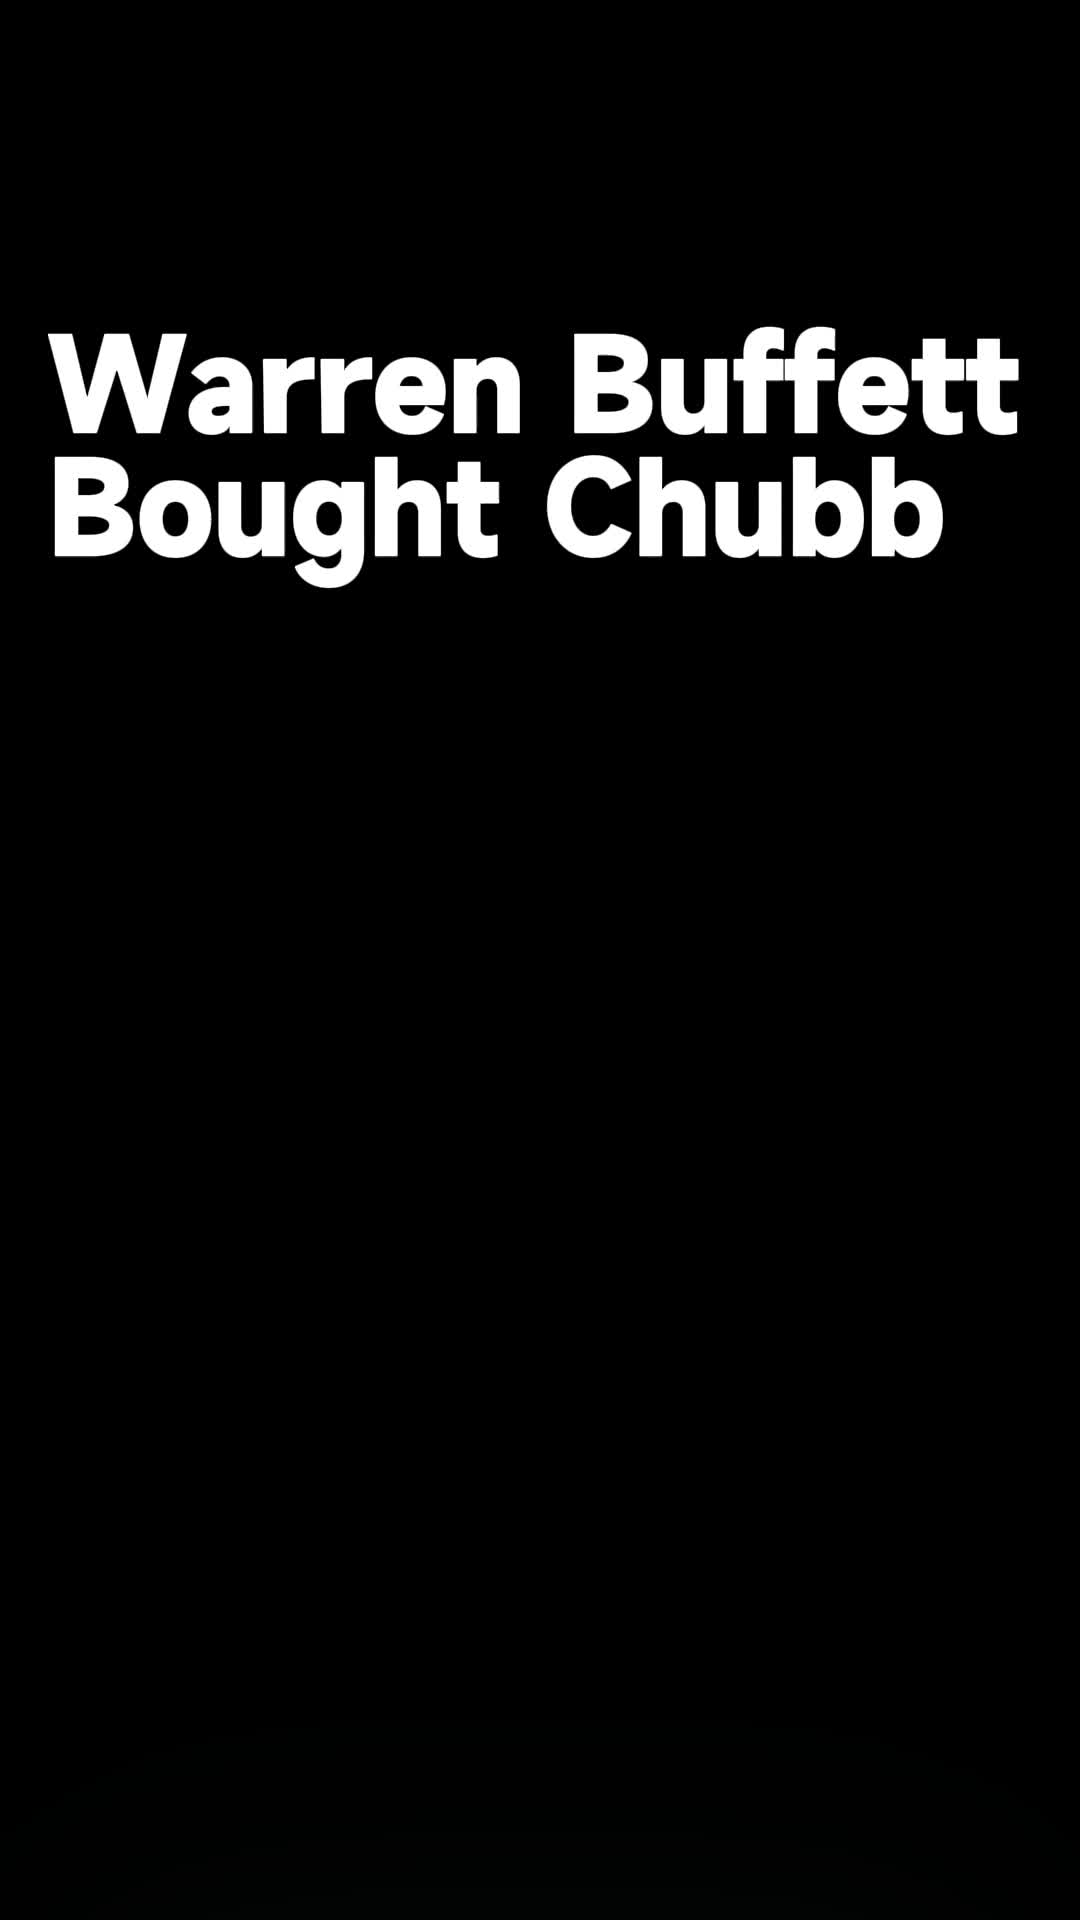 Warren Buffett Bought Chubb